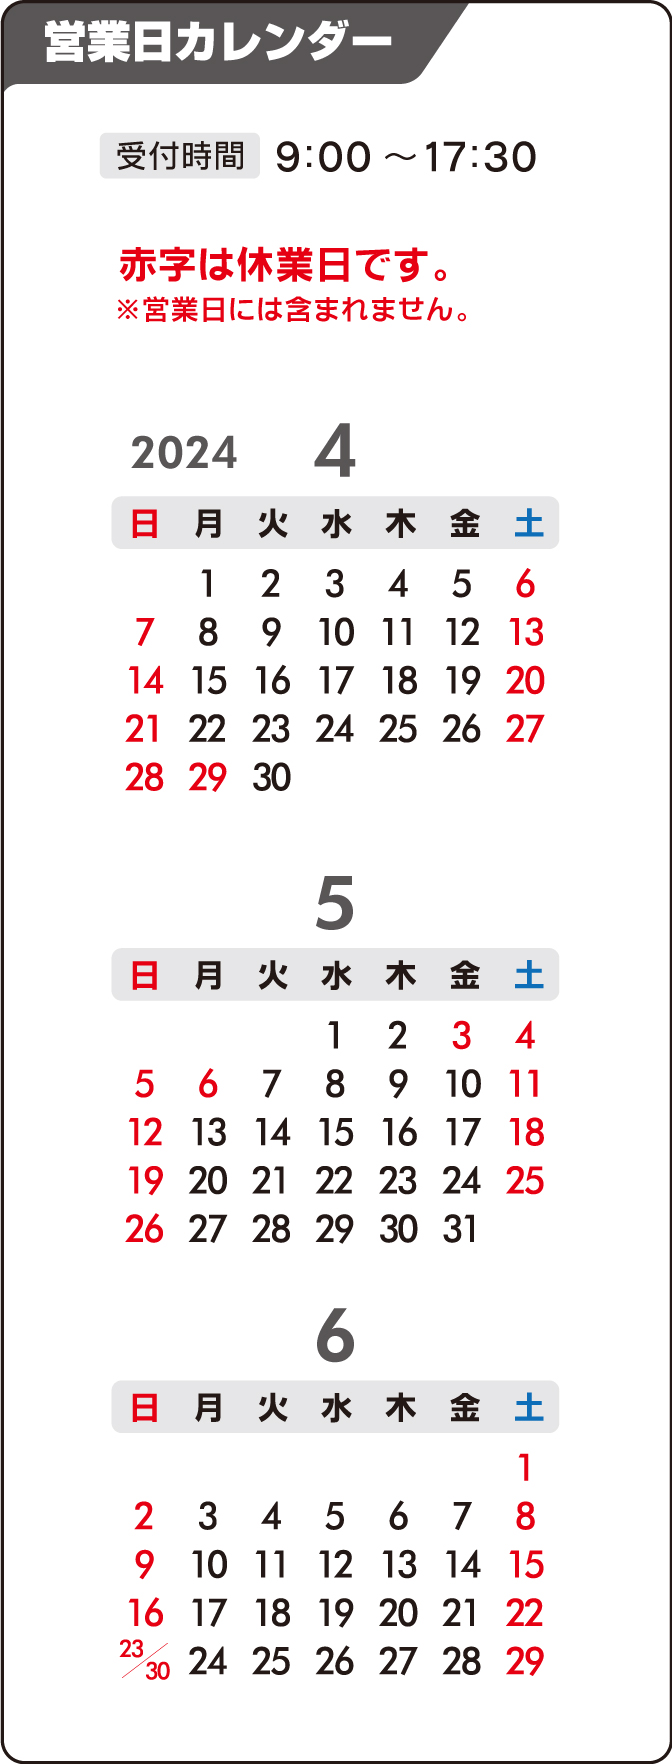 名入れカレンダーの制作・印刷 販促品/オリジナルノベルティグッズ/記念品【e販促ストア】